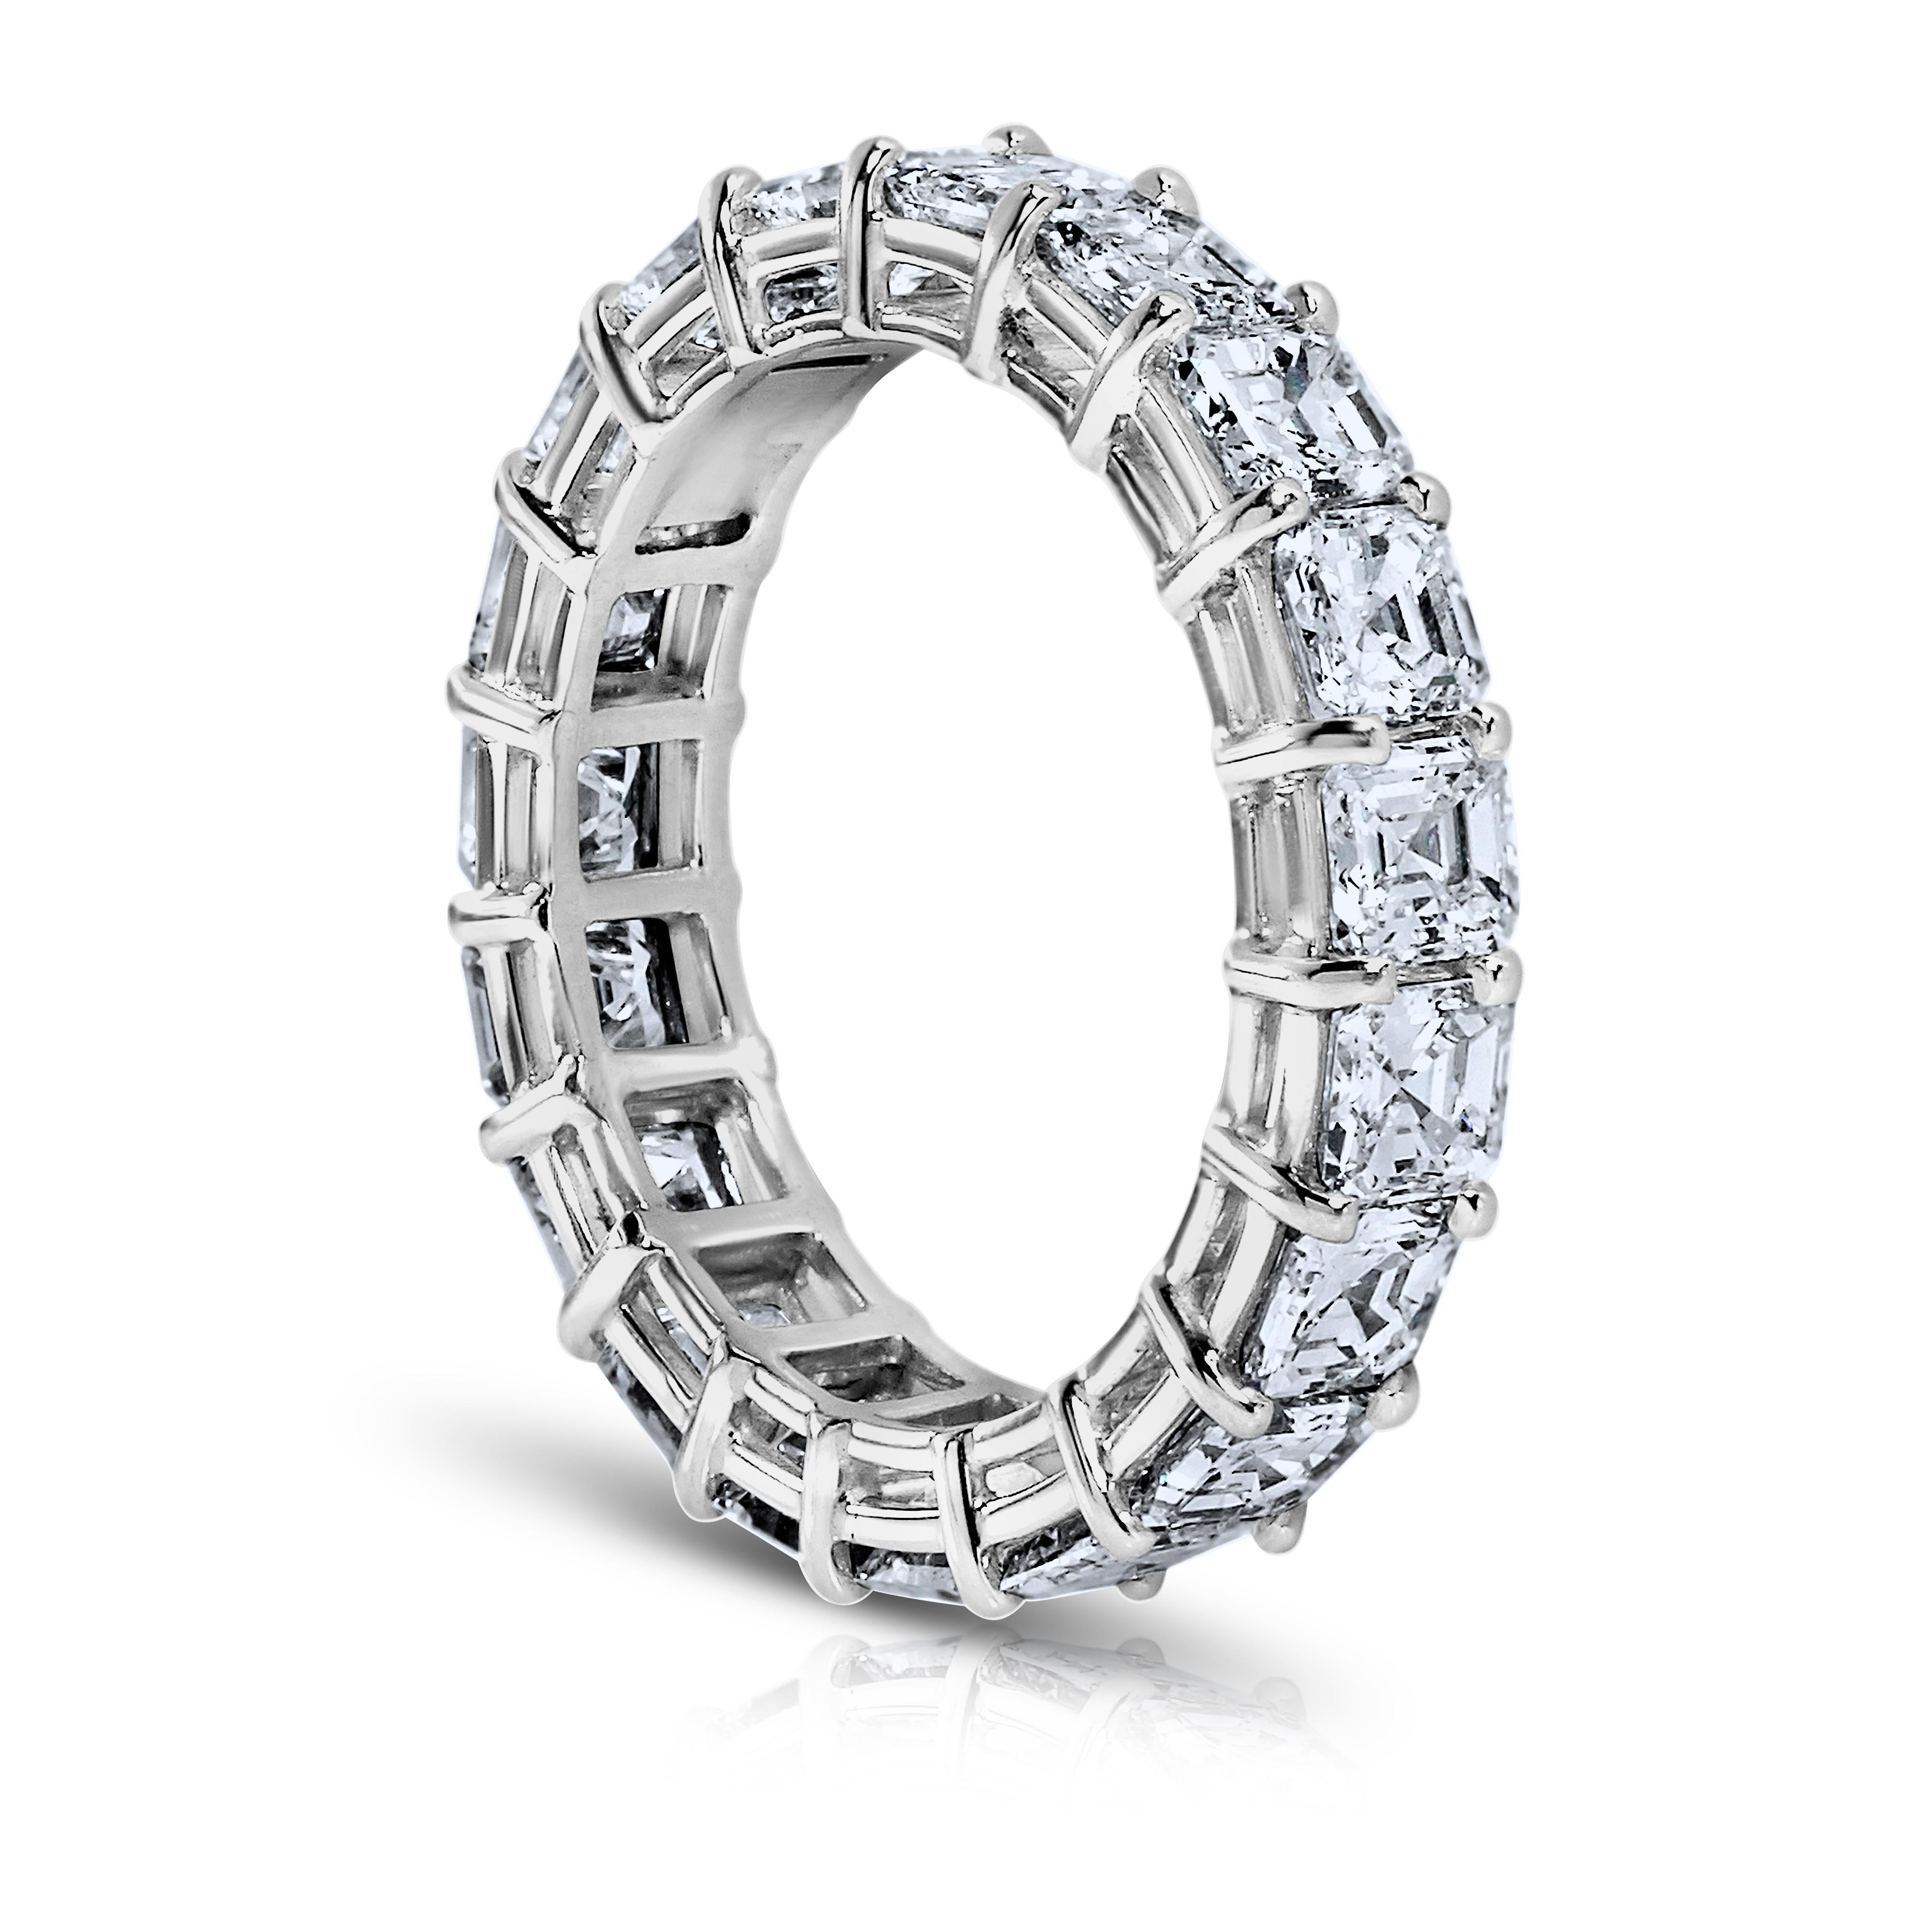 Asher Cut Diamantring Platin Ewigkeit Band geteilt Zinken Stil mit einer Galerie.
14 perfekt aufeinander abgestimmte Diamanten mit einem Mindestgewicht von 7 Karat. G.I.A.-Zertifikate für jeden Diamanten . Die Farben reichen von D-F. VVS1-VS2 in